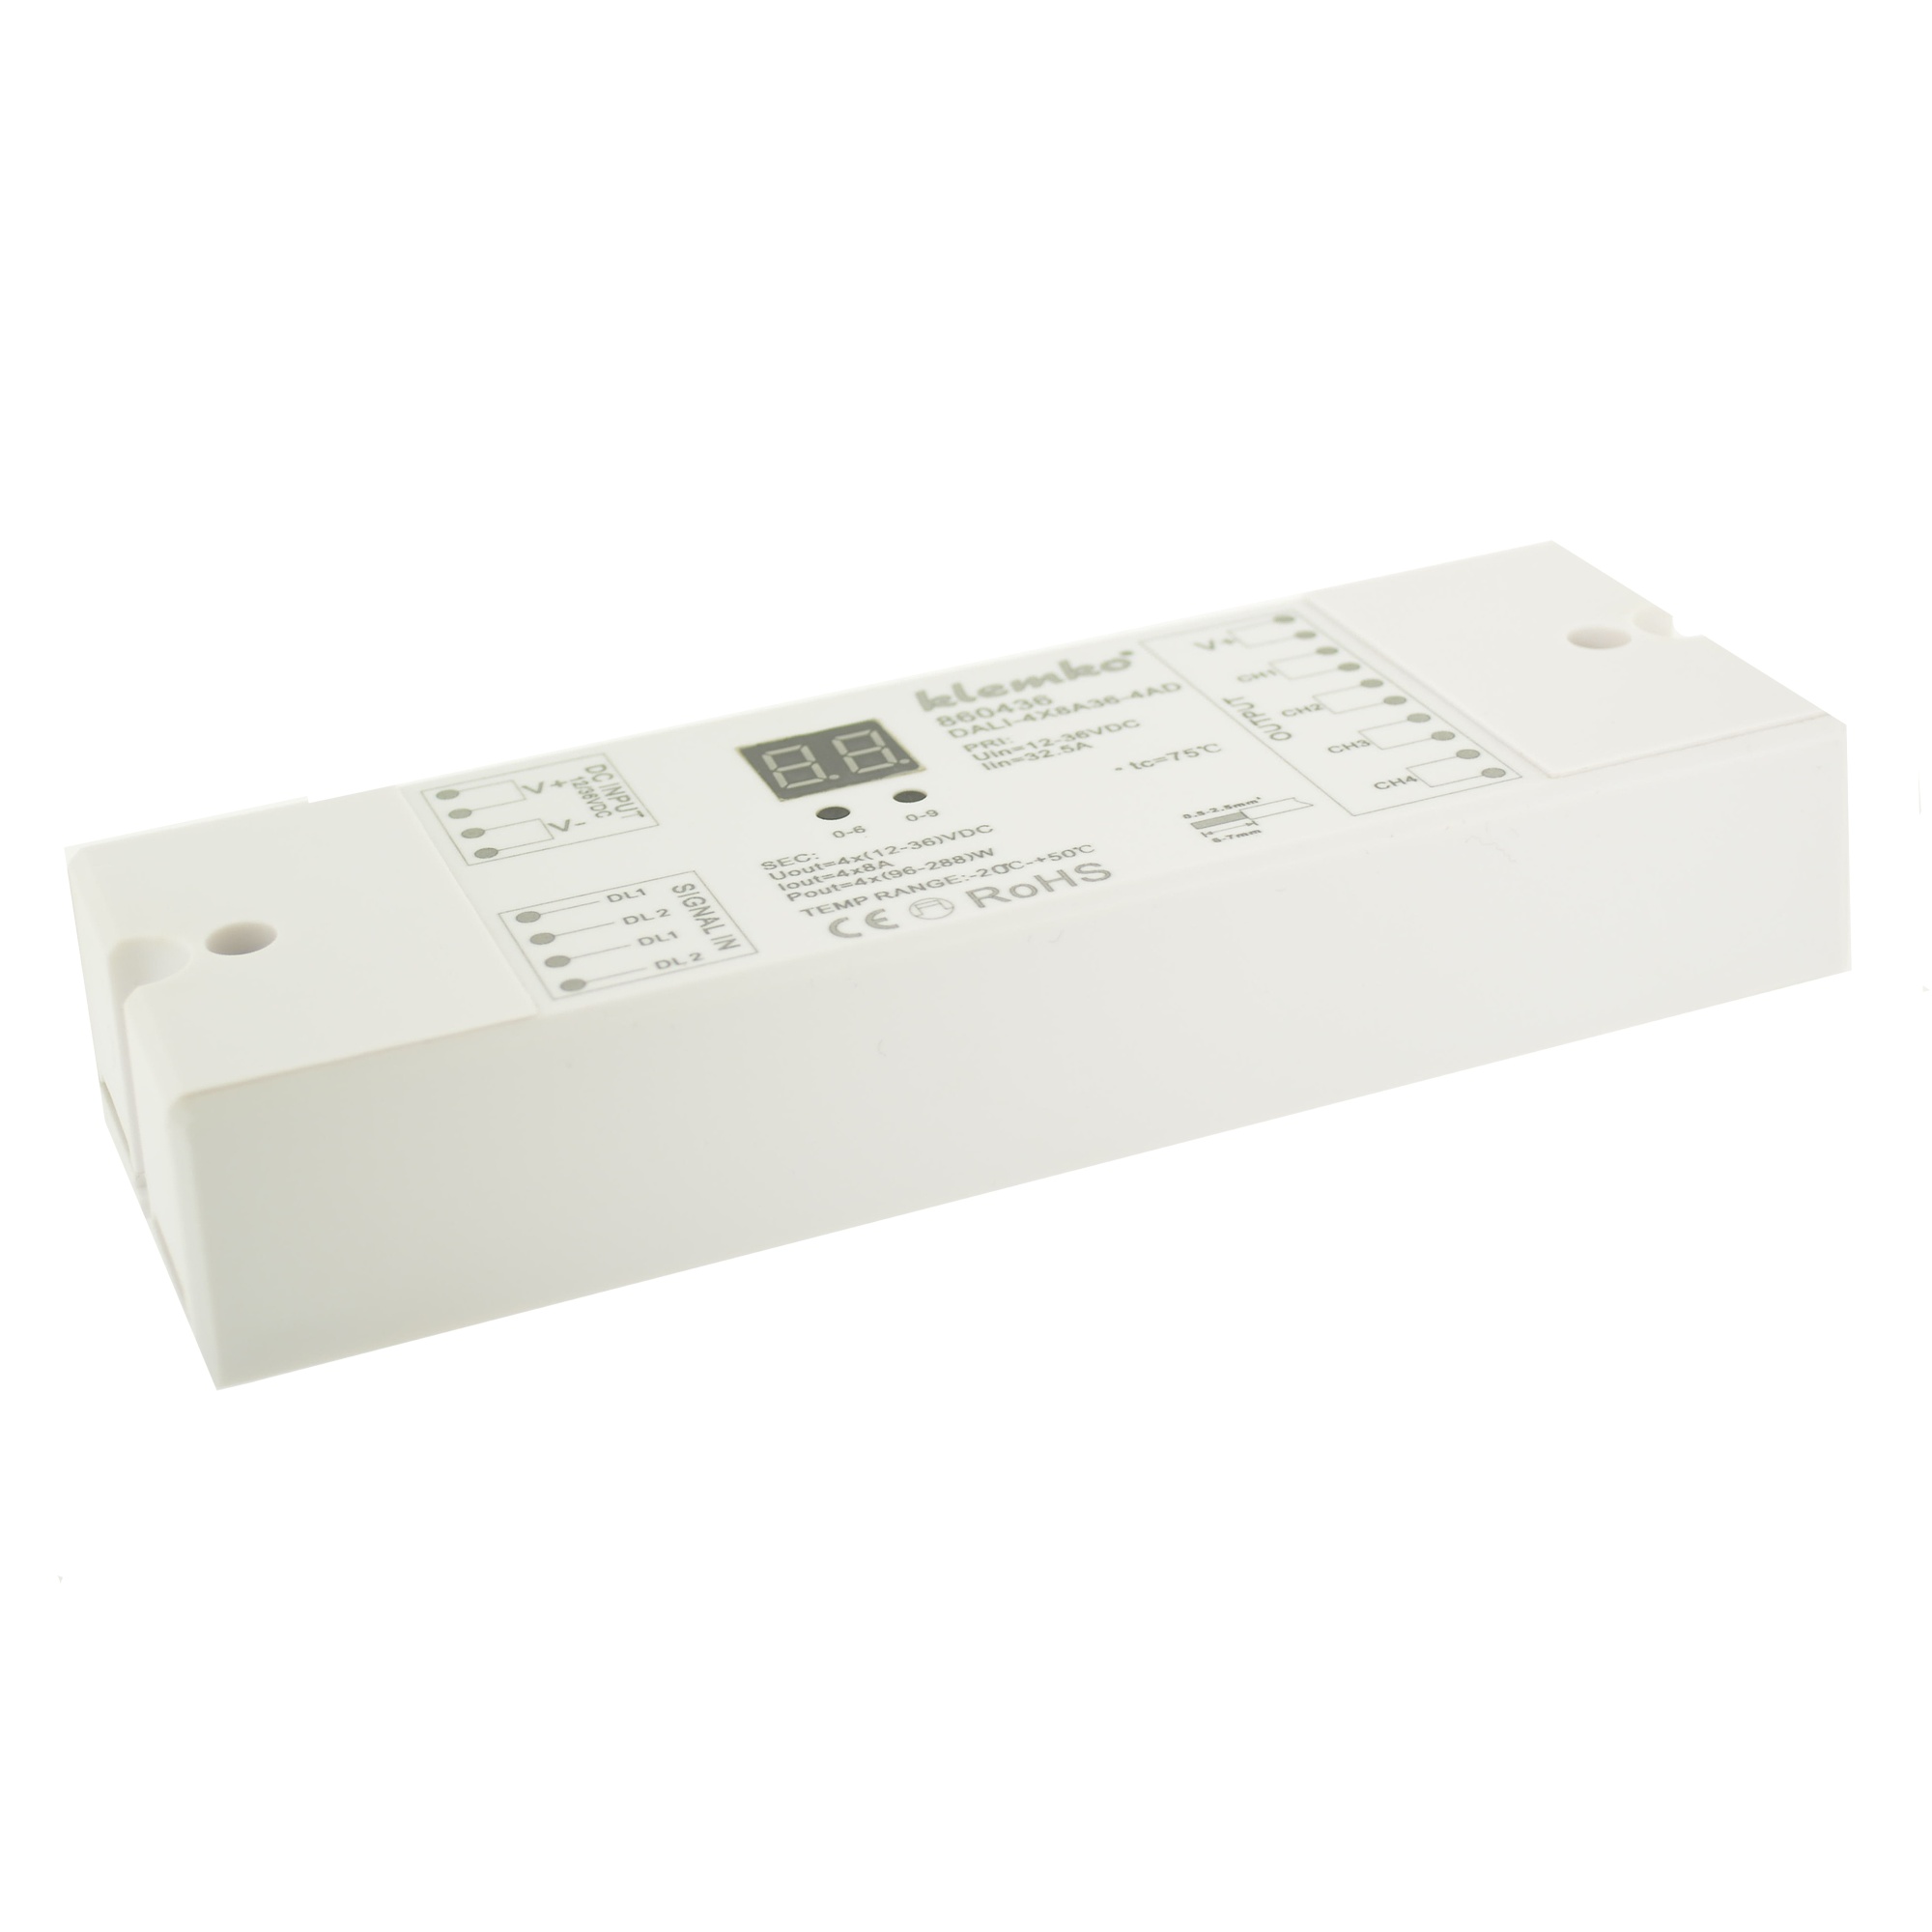 KLEMKO 860436 Kleurcontroller voor Led DALI-4X8A36-4AD Dali controller constante spanning, 4 adressen voor 4 uitgangen